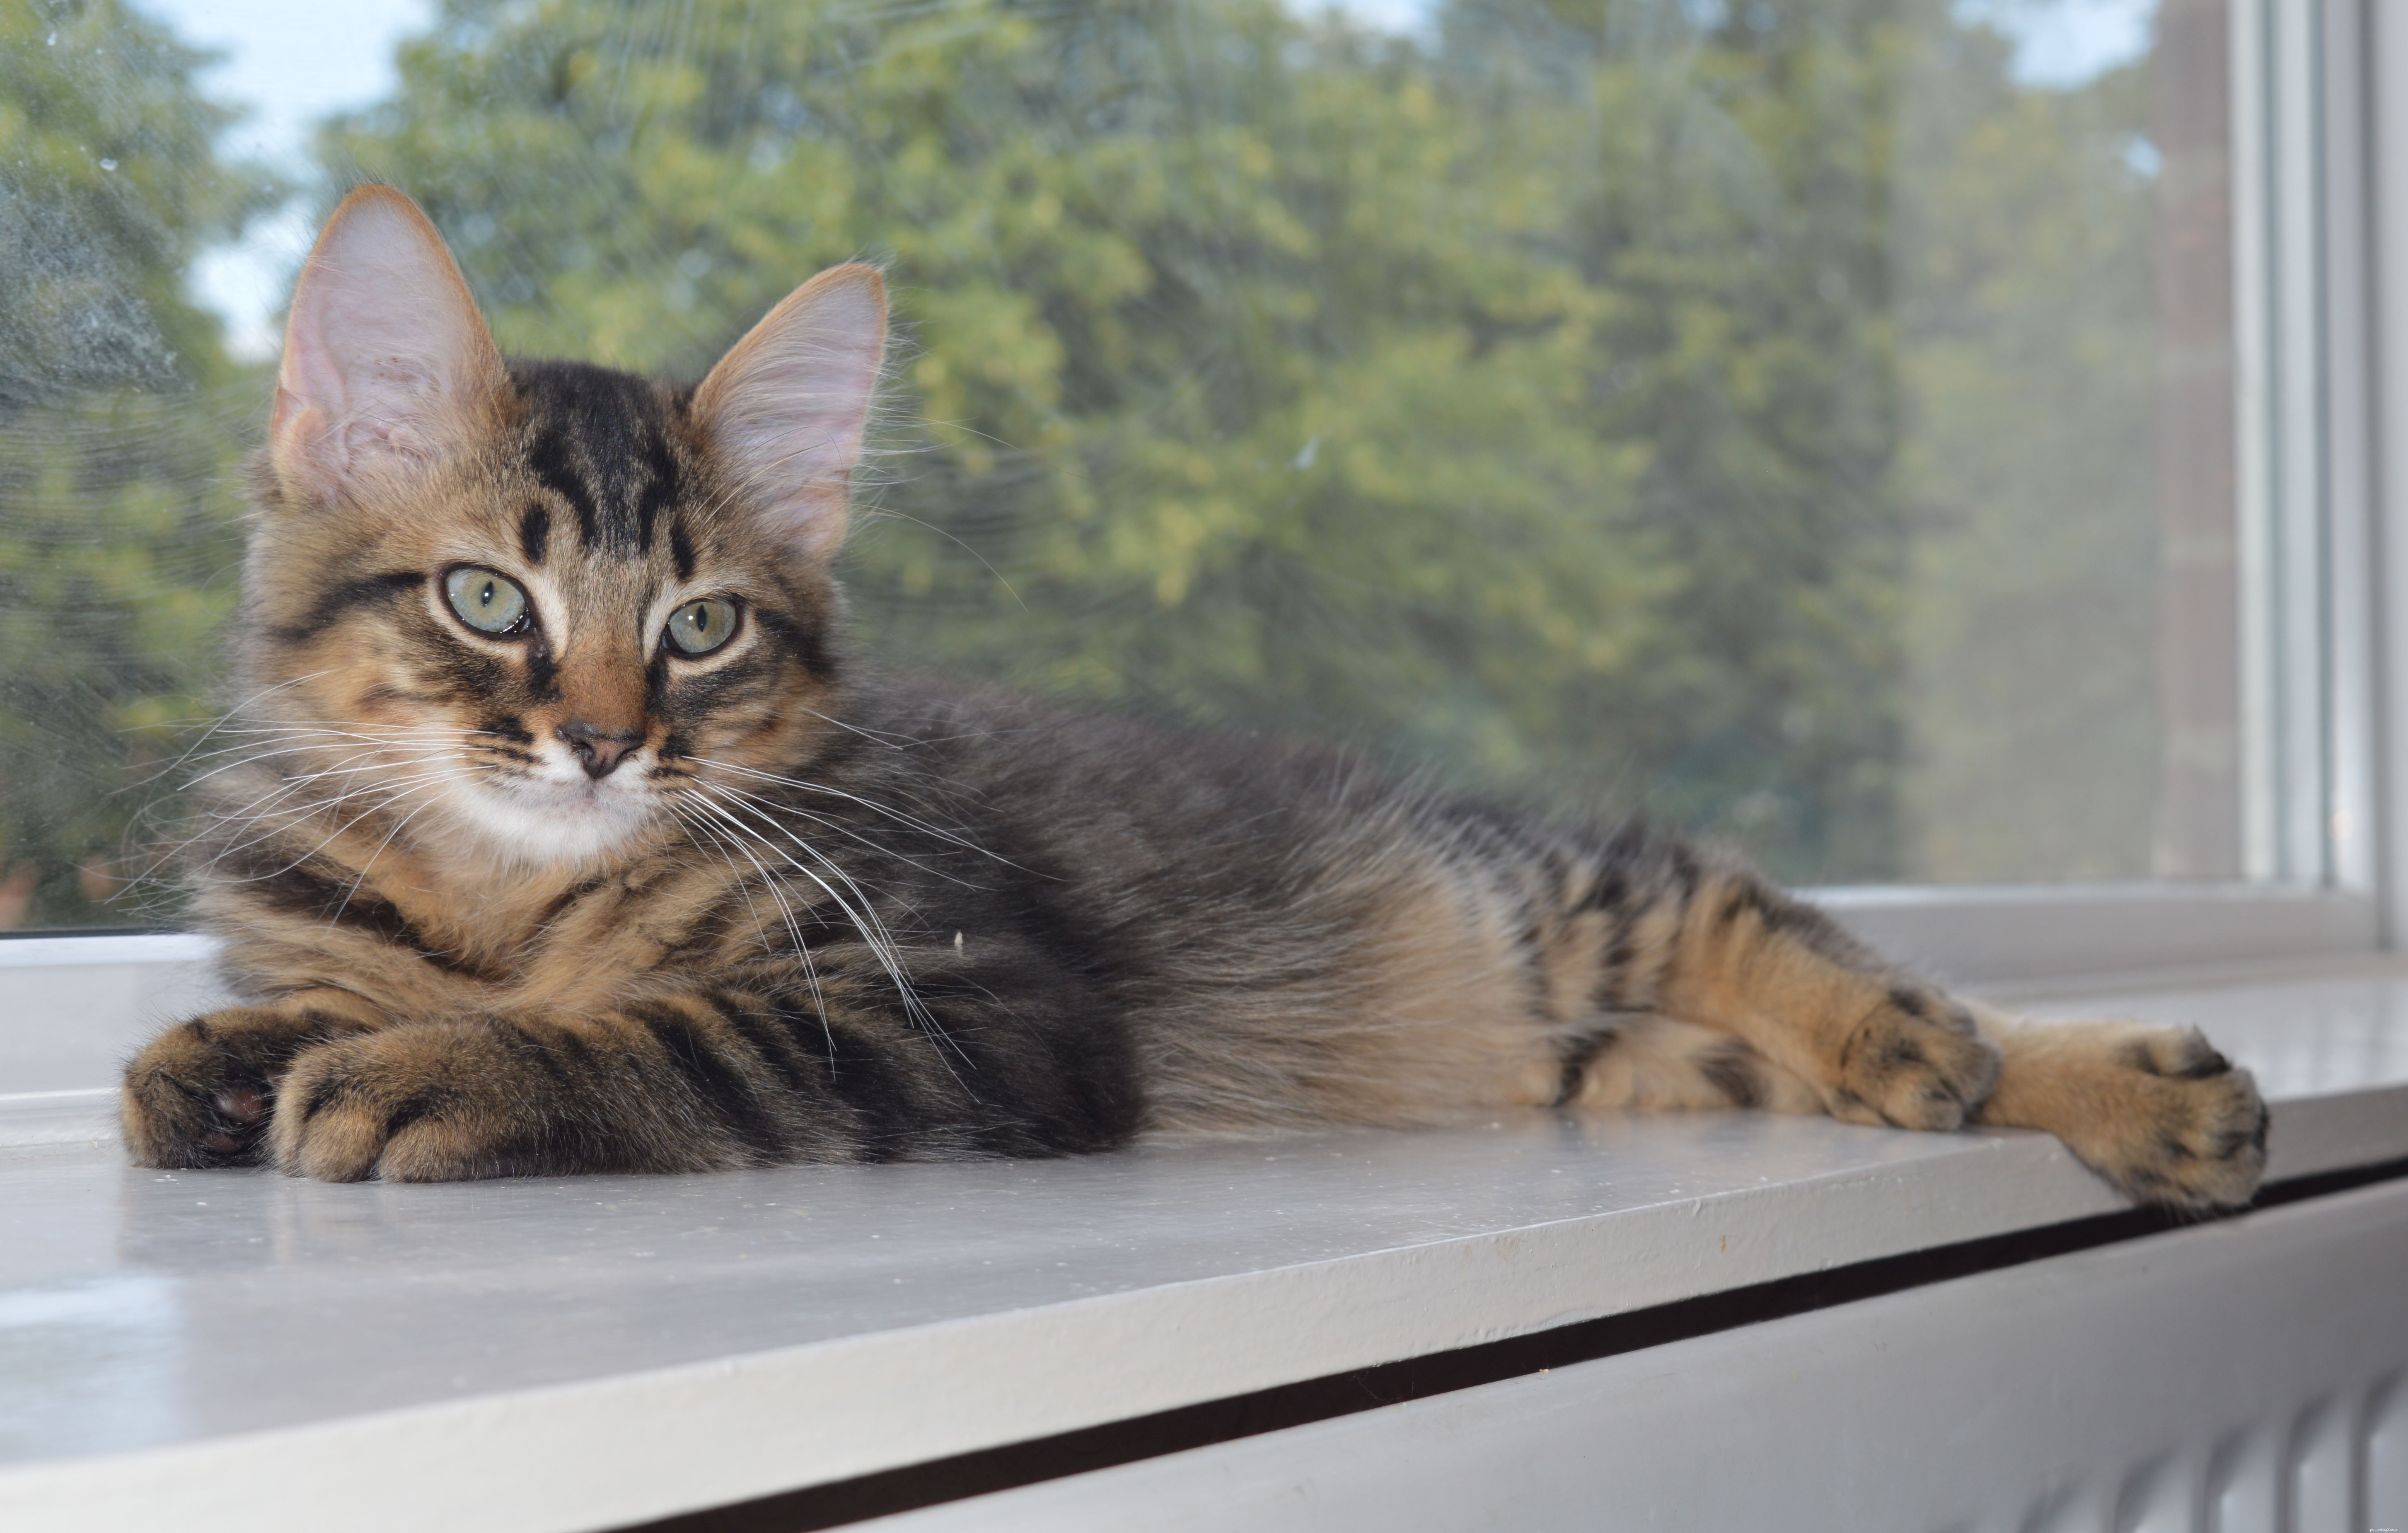 Koťata Halloumi a Brie mají ‚syndrom vratkých koček‘ a stará se o ně pobočka ochrany koček East Northumberland Branch